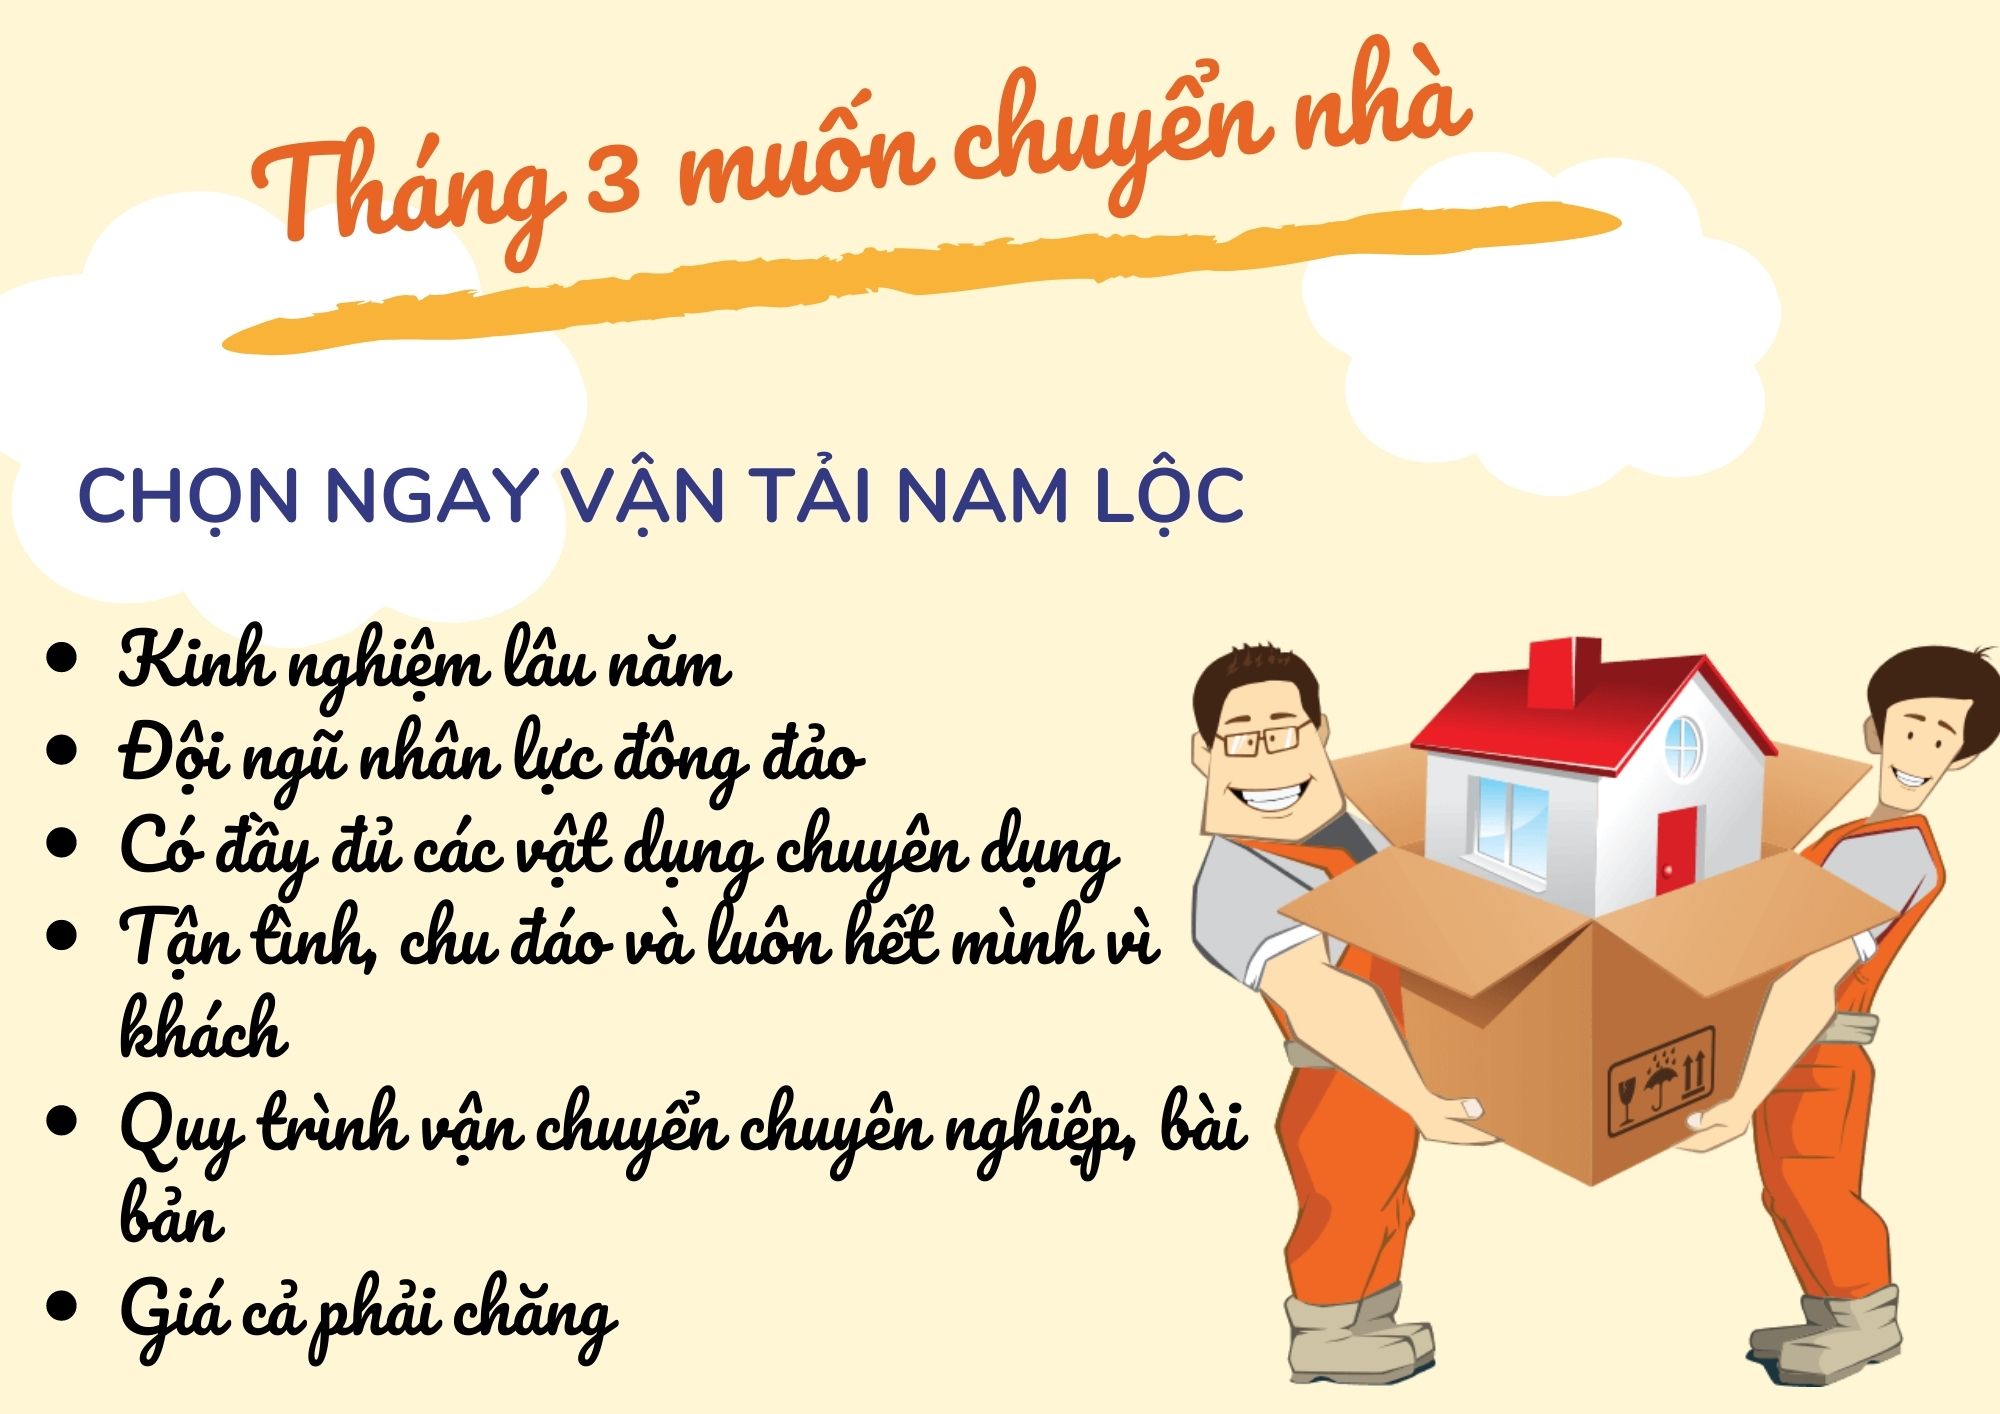 Tháng 3, khách cần chuyển nhà tại Vinh gọi ngay Vận tải Nam Lộc